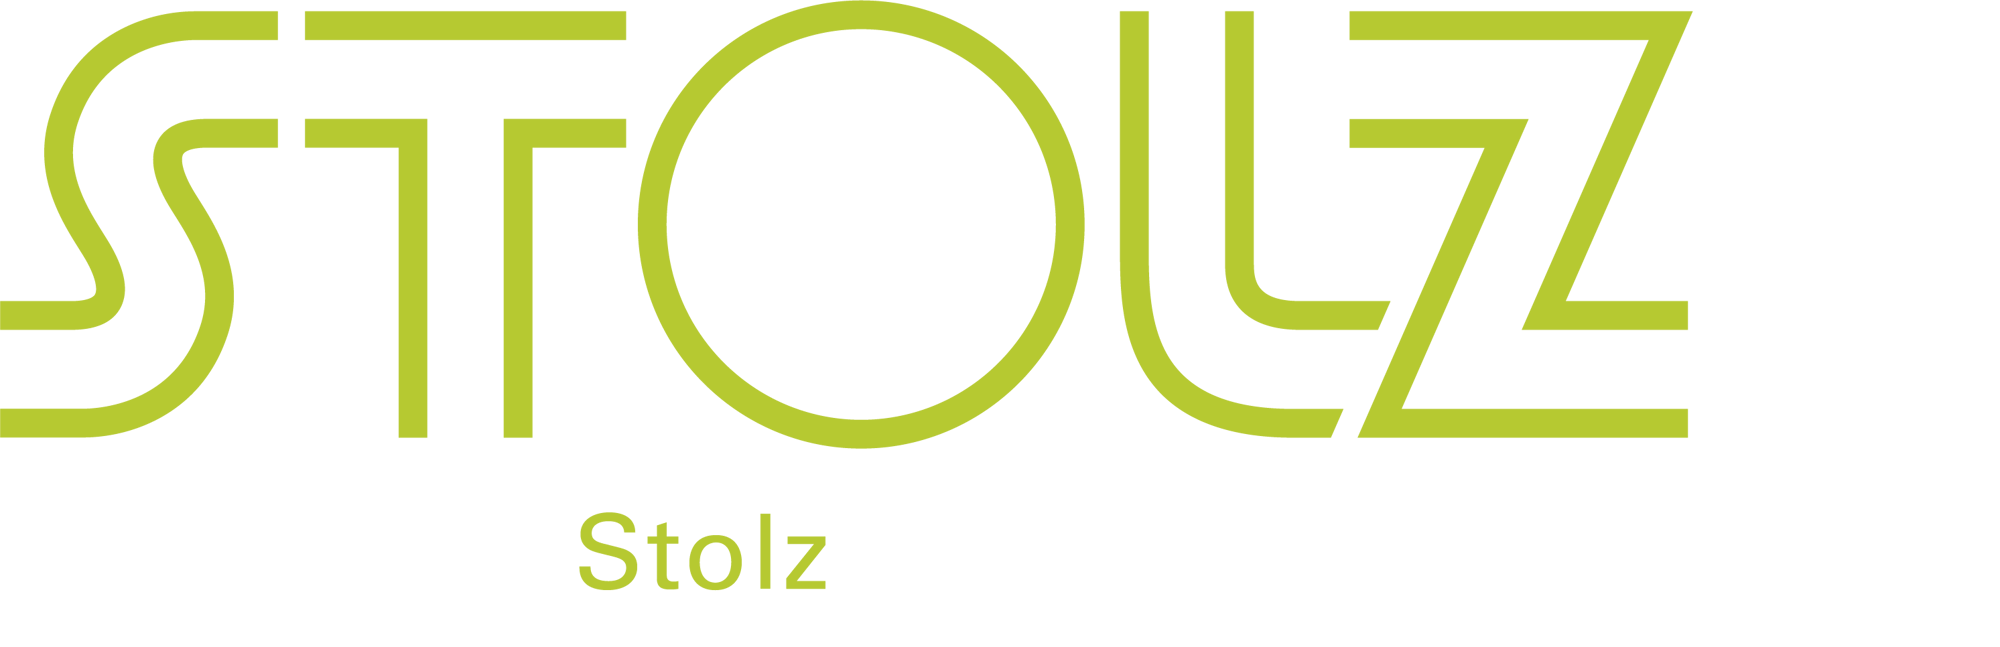 DEWE Stolz Logo weissModified